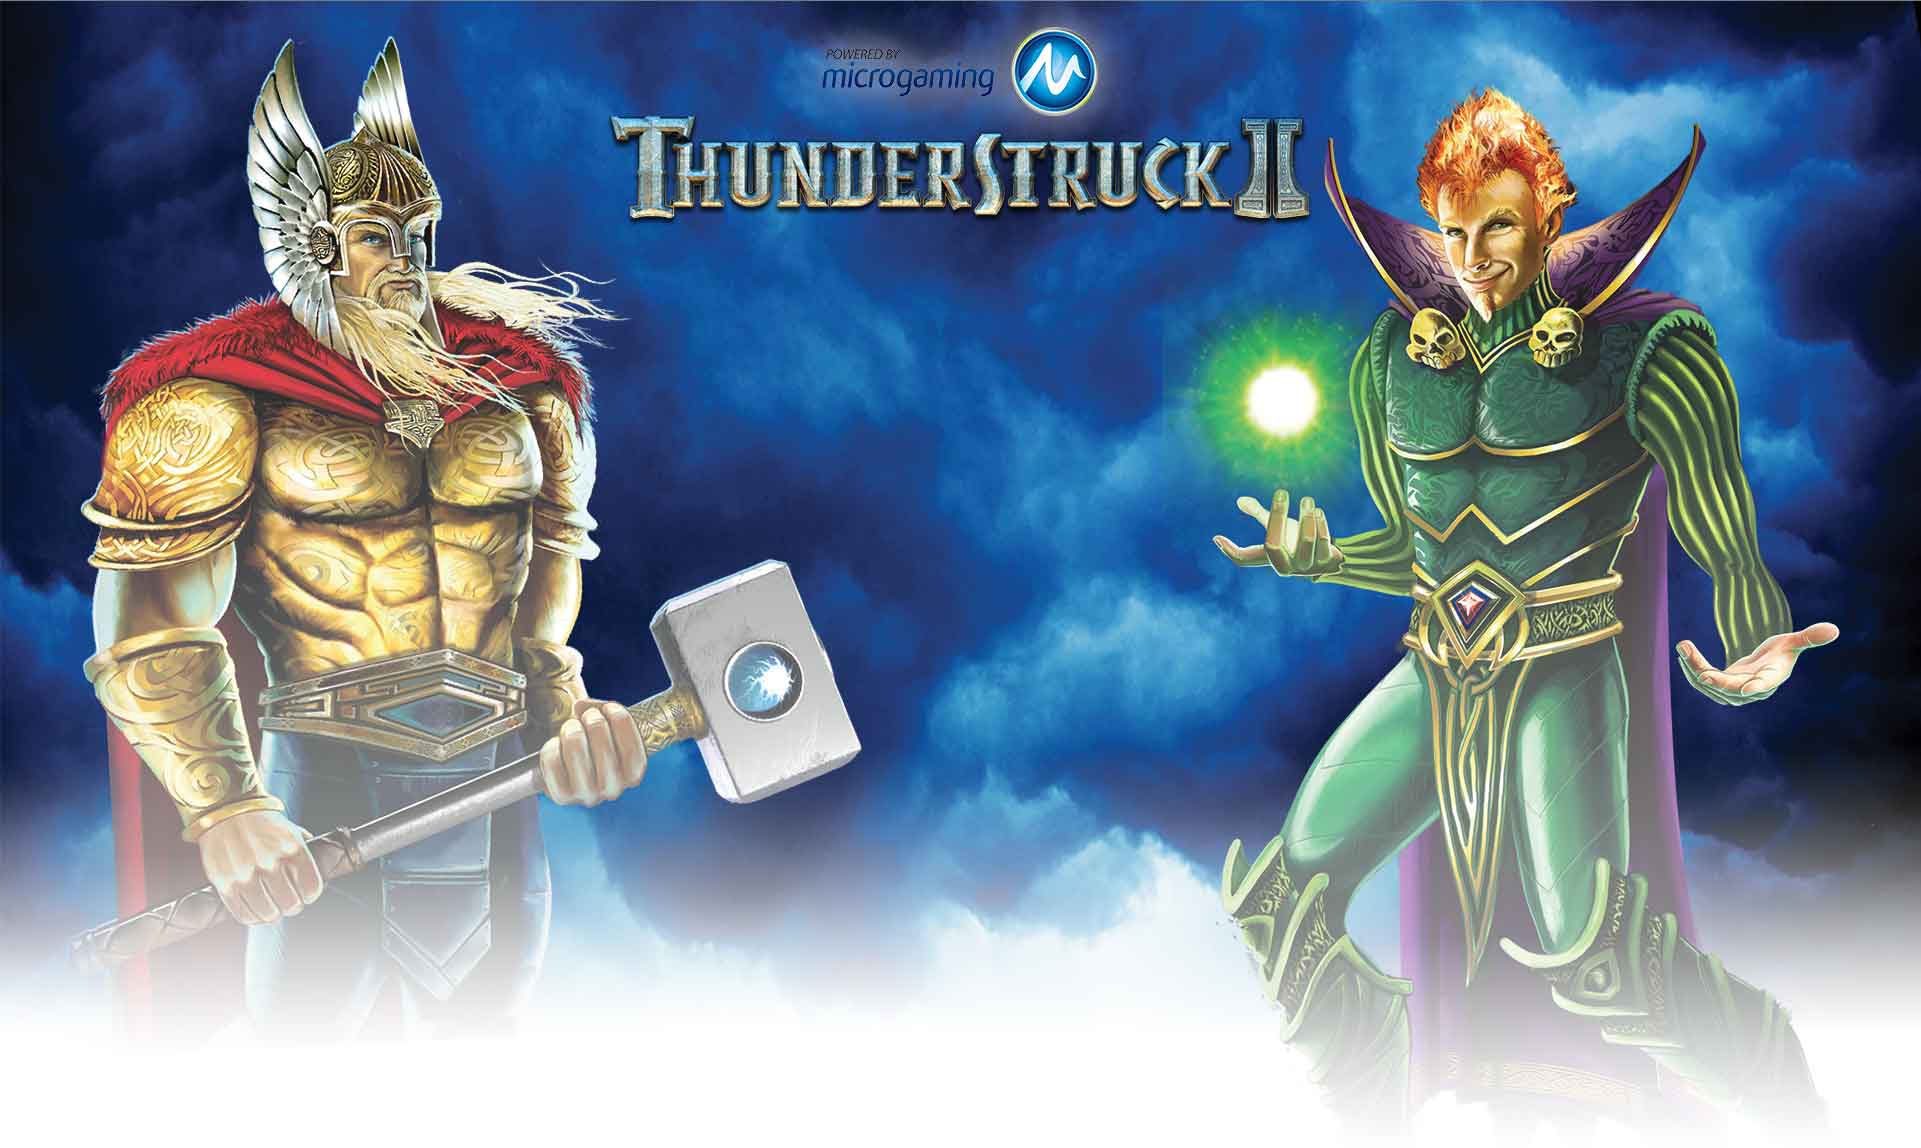 Thunderstruck II Online Slot Review